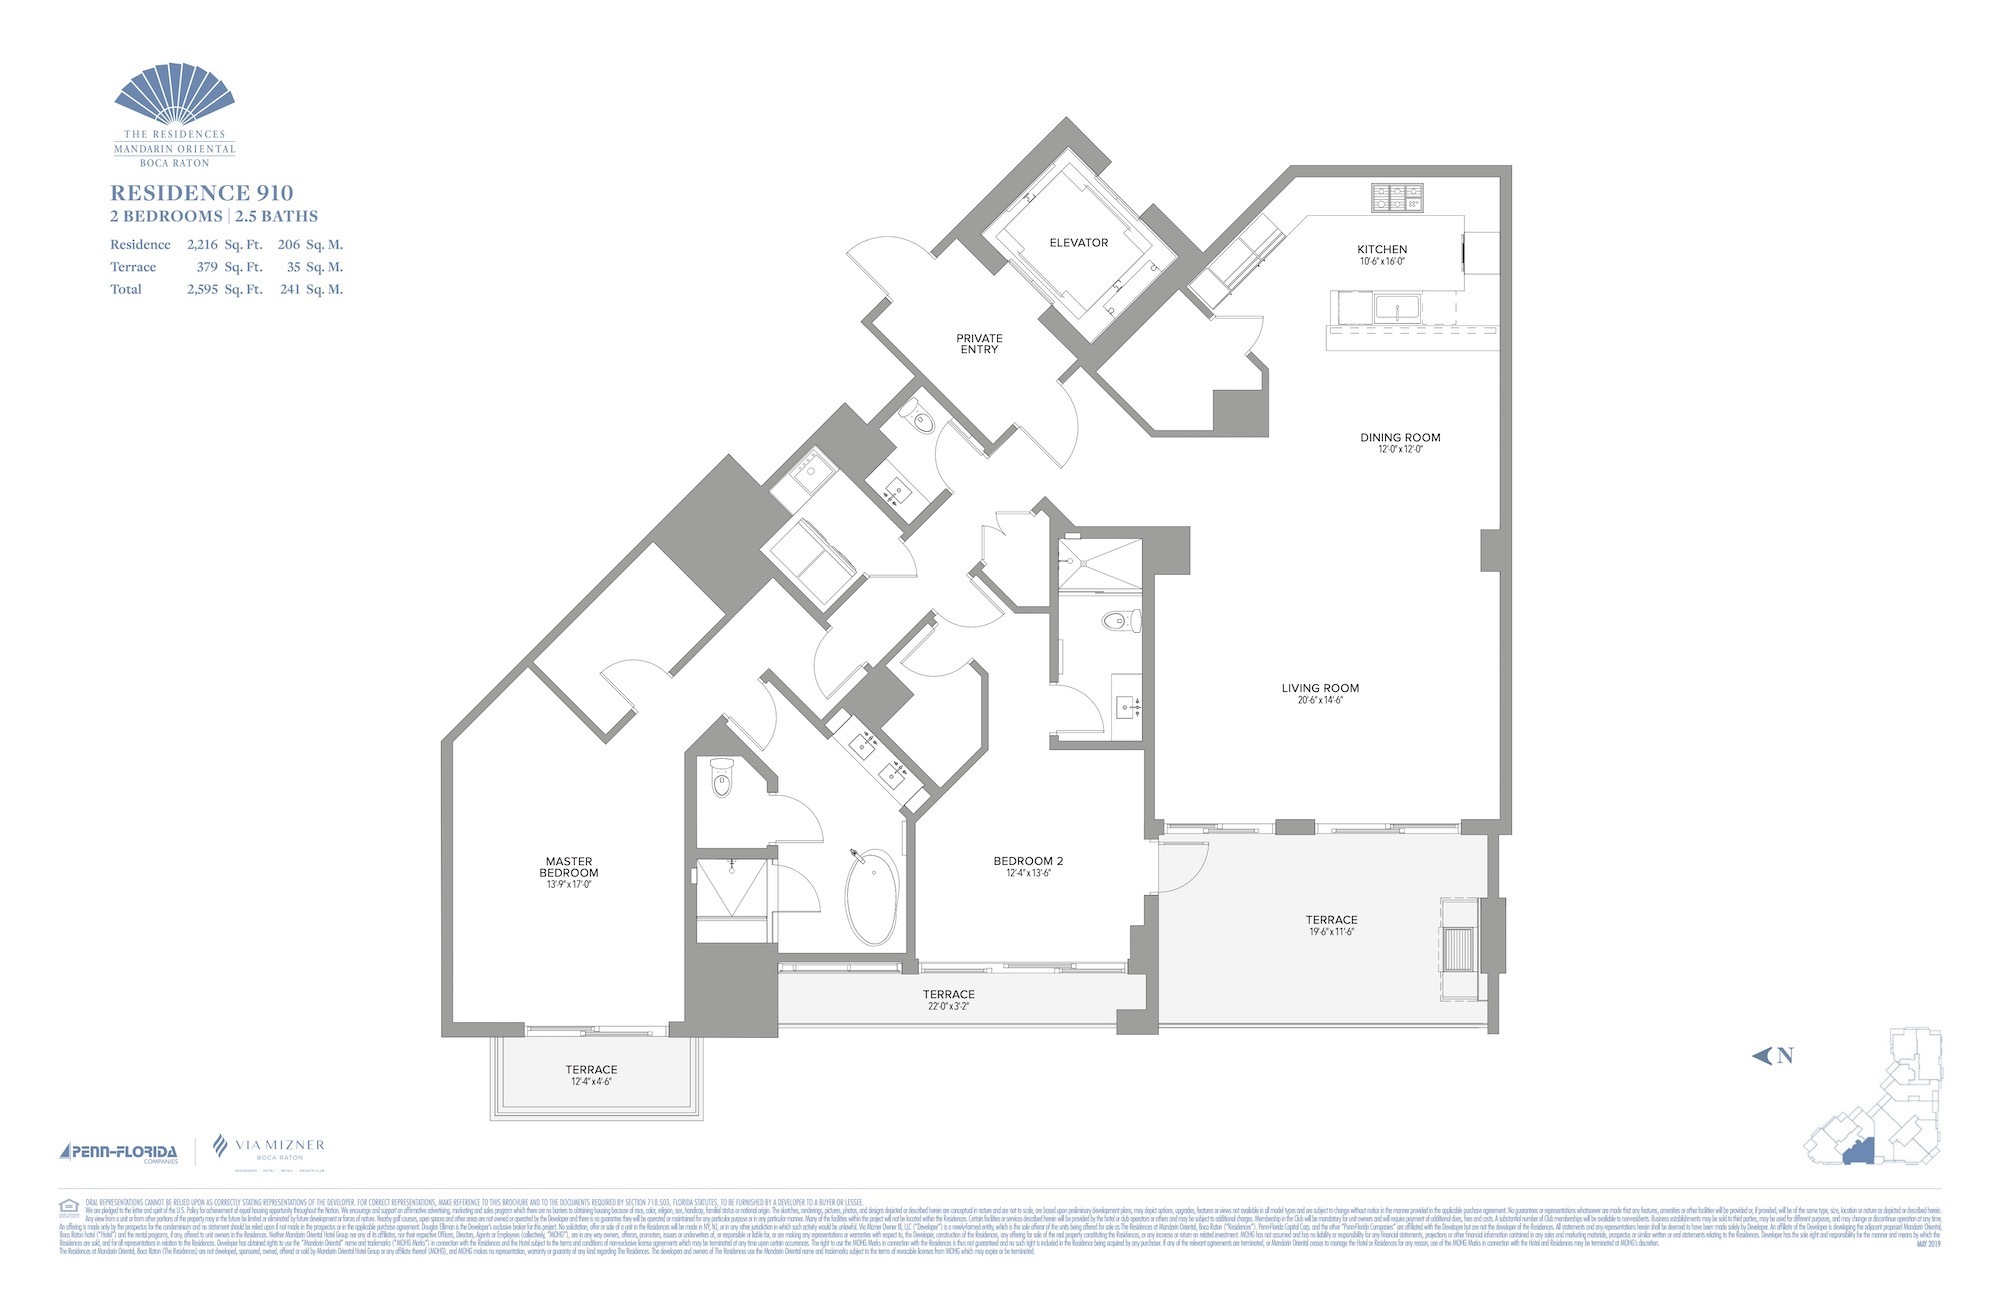 Floor Plan for Residence at Mandarin Oriental Floorplans, Residence 910